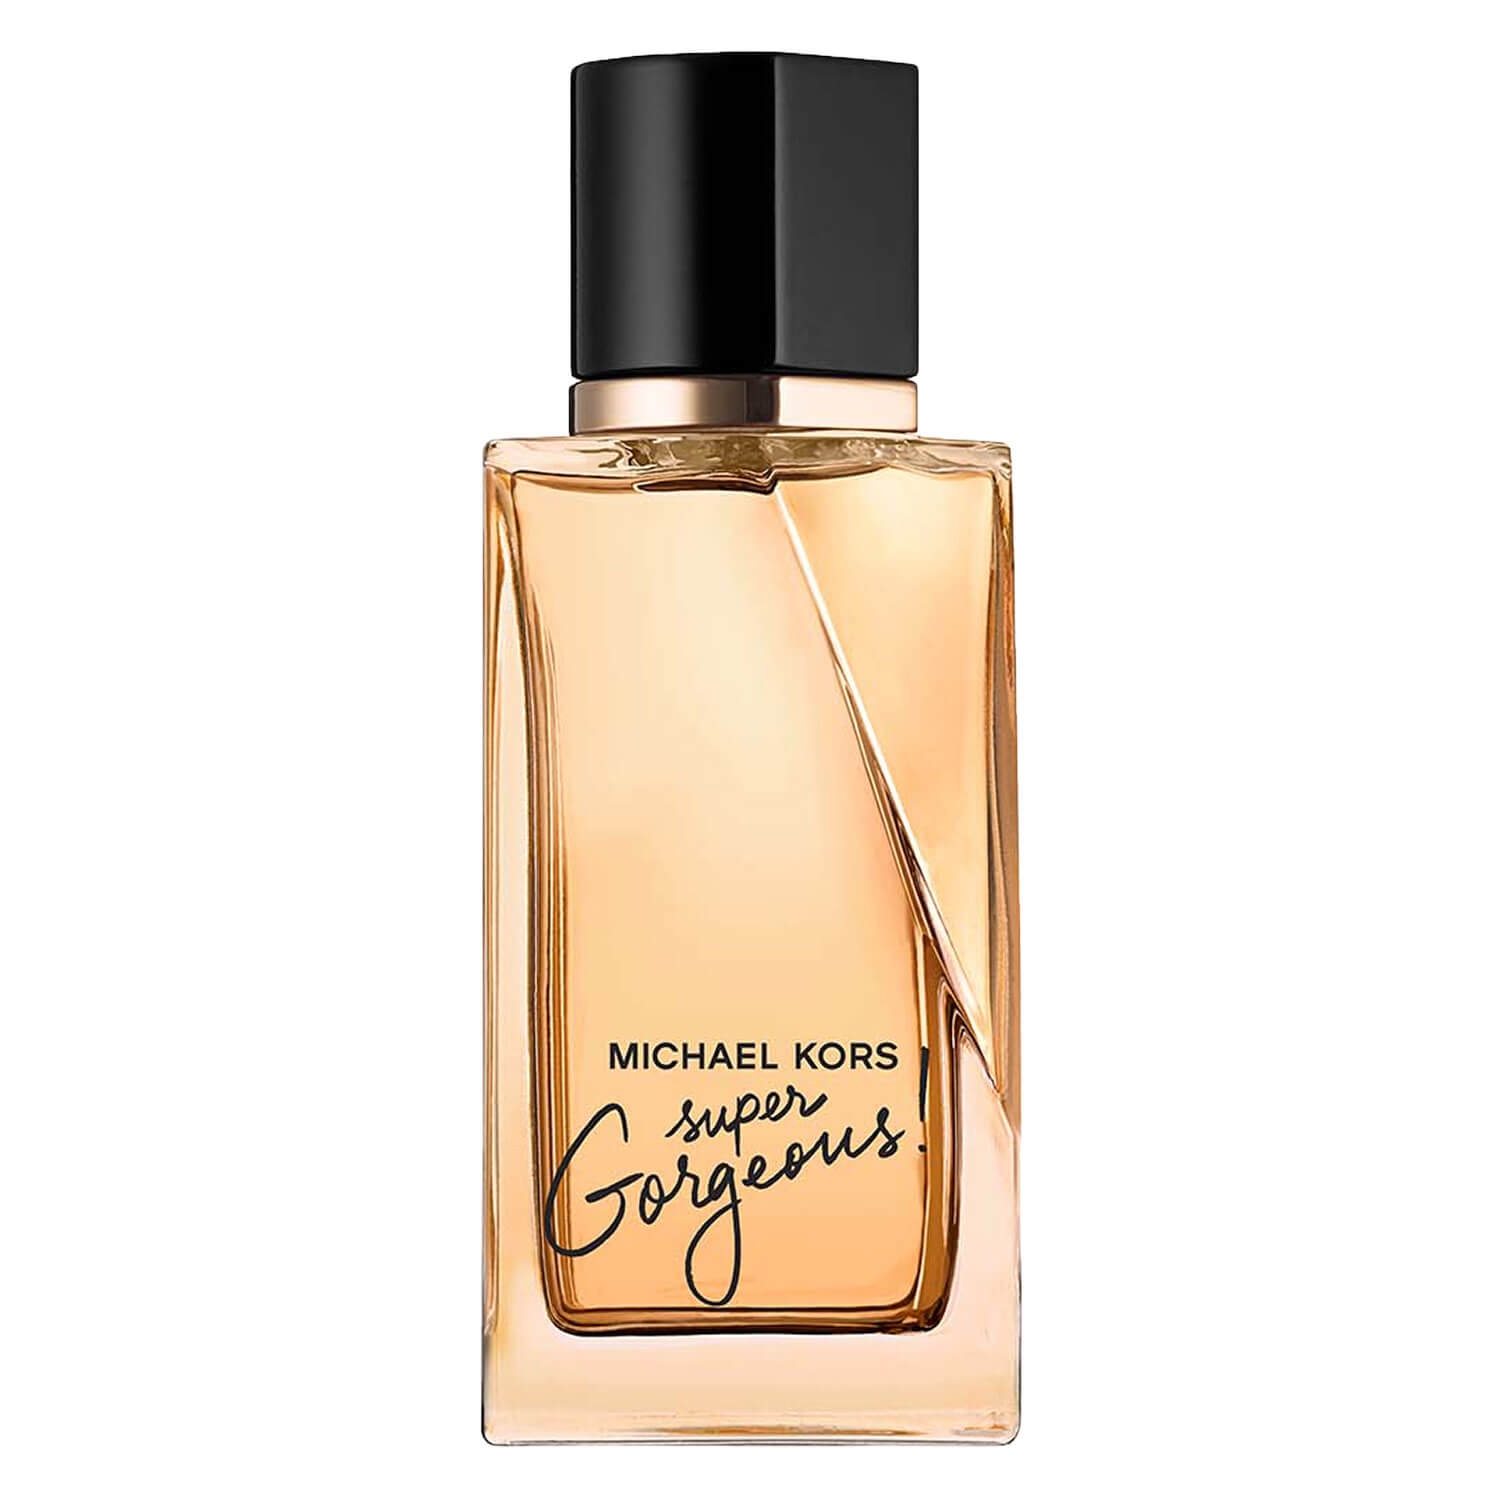 Product image from MK - Super Gorgeous! Eau de Parfum Intense